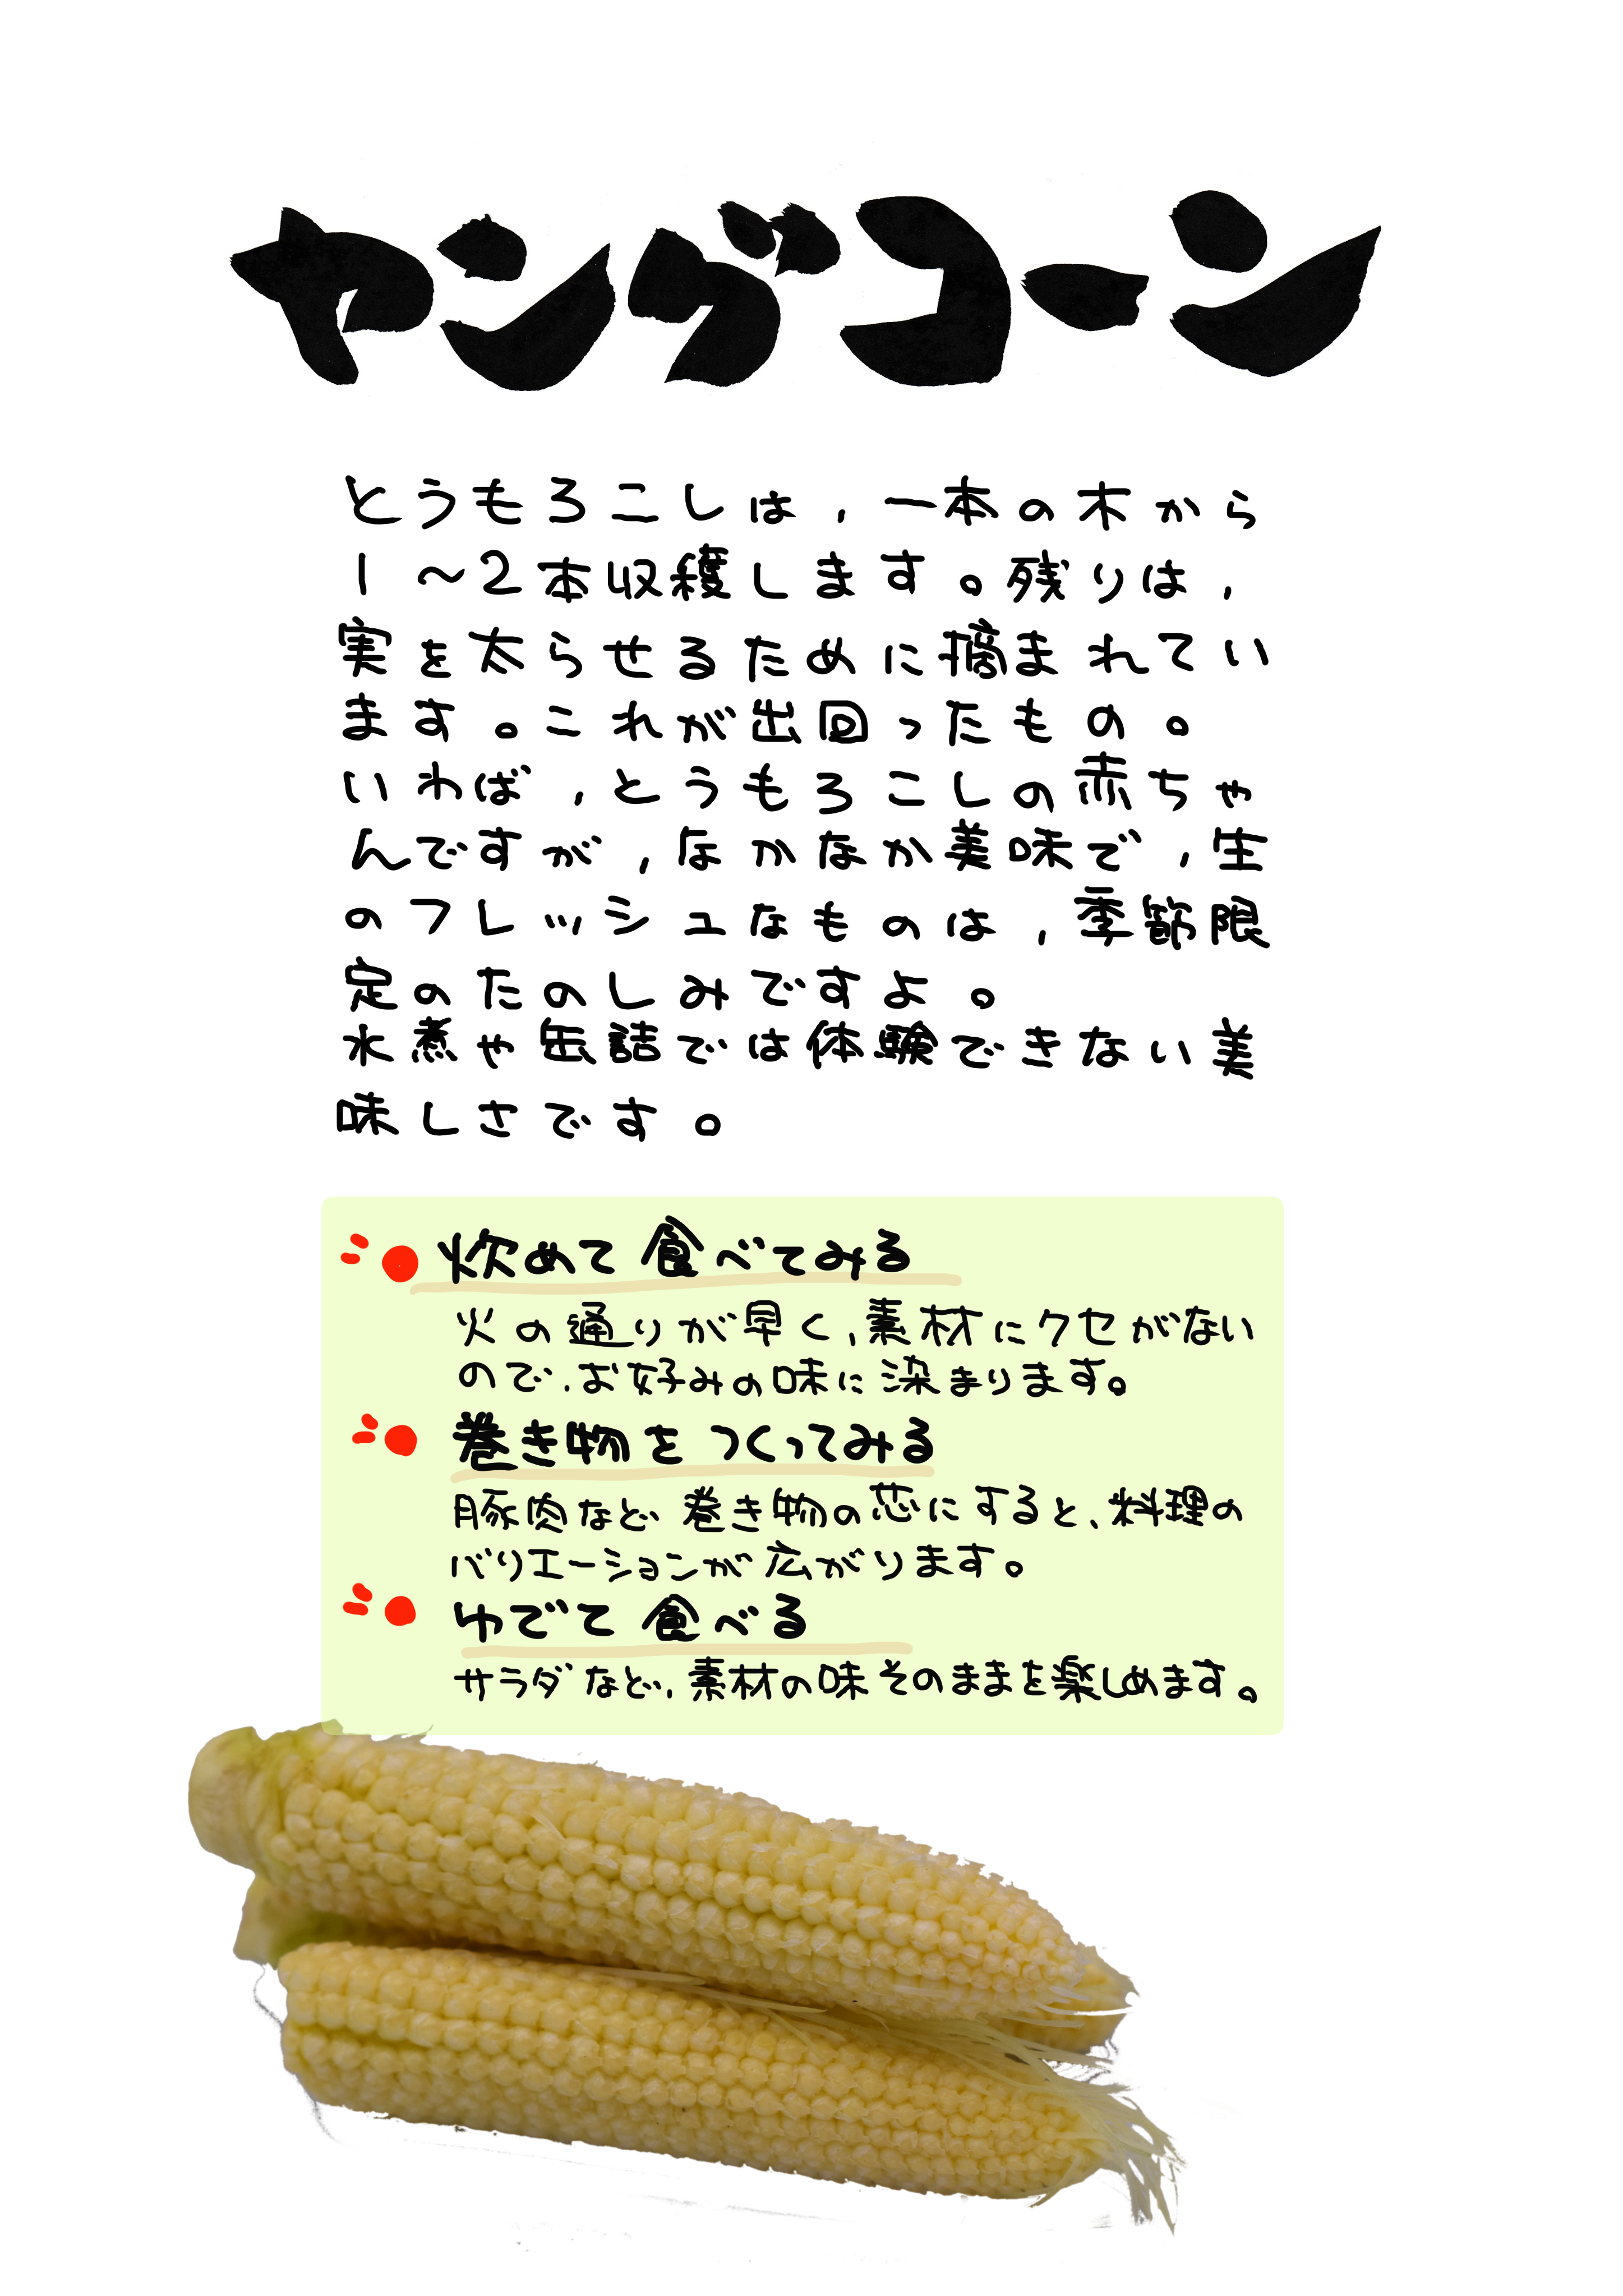 新鮮ヤングコーン とうもろこし おひさまコーン 軽井沢産高原野菜 約100本